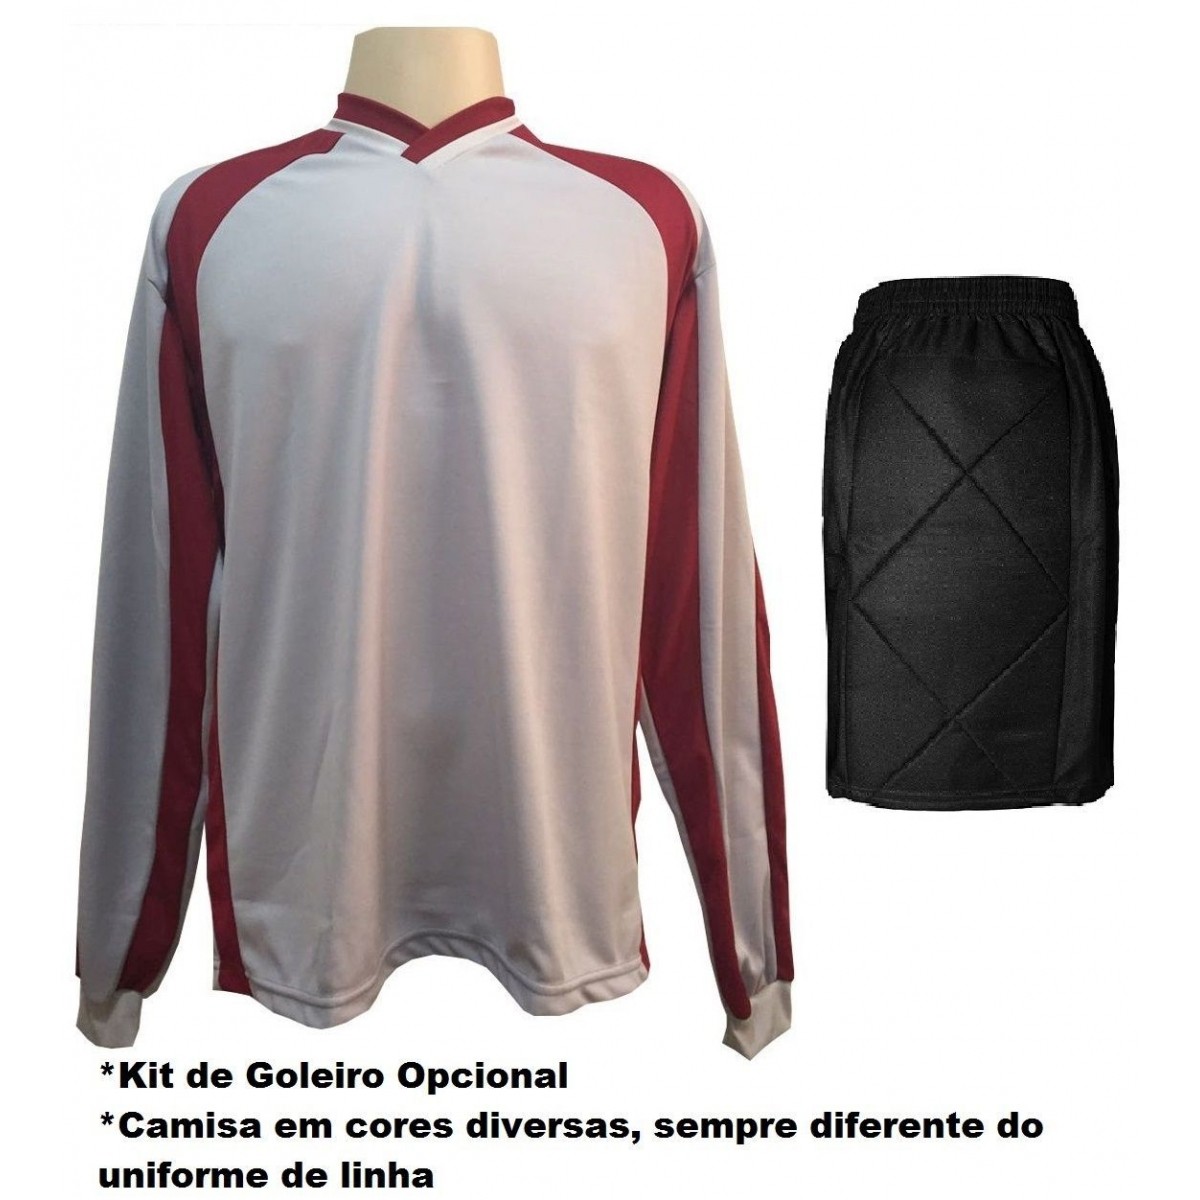 Uniforme Esportivo com 18 camisas modelo City Vermelho/Preto + 18 calções modelo Copa + 1 Goleiro + Brindes